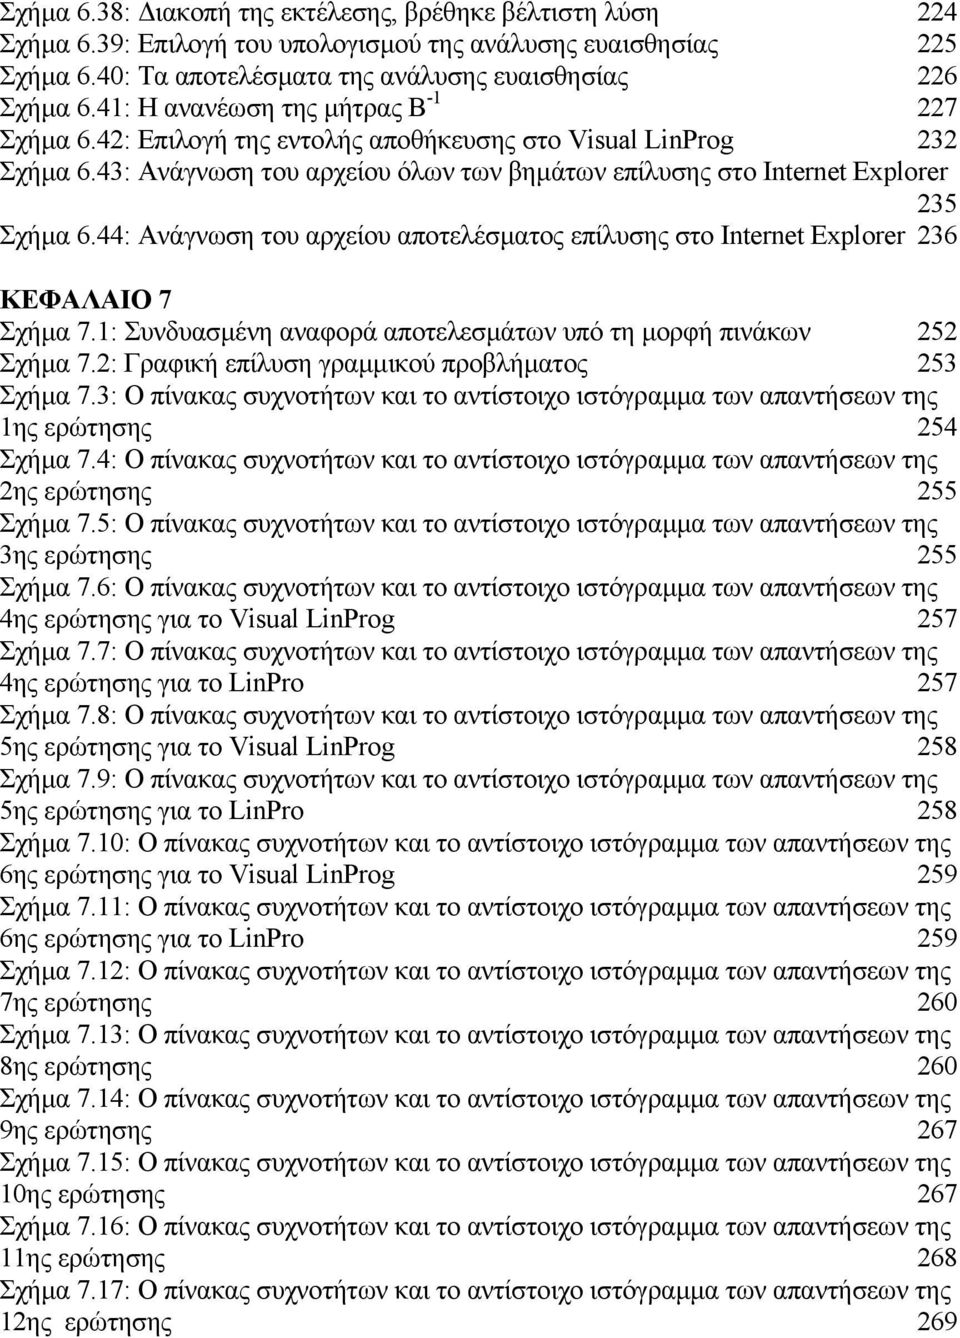 44: Ανάγνωση του αρχείου αποτελέσµατος επίλυσης στο Internet Explorer 236 ΚΕΦΑΛΑΙΟ 7 Σχήµα 7.1: Συνδυασµένη αναφορά αποτελεσµάτων υπό τη µορφή πινάκων 252 Σχήµα 7.